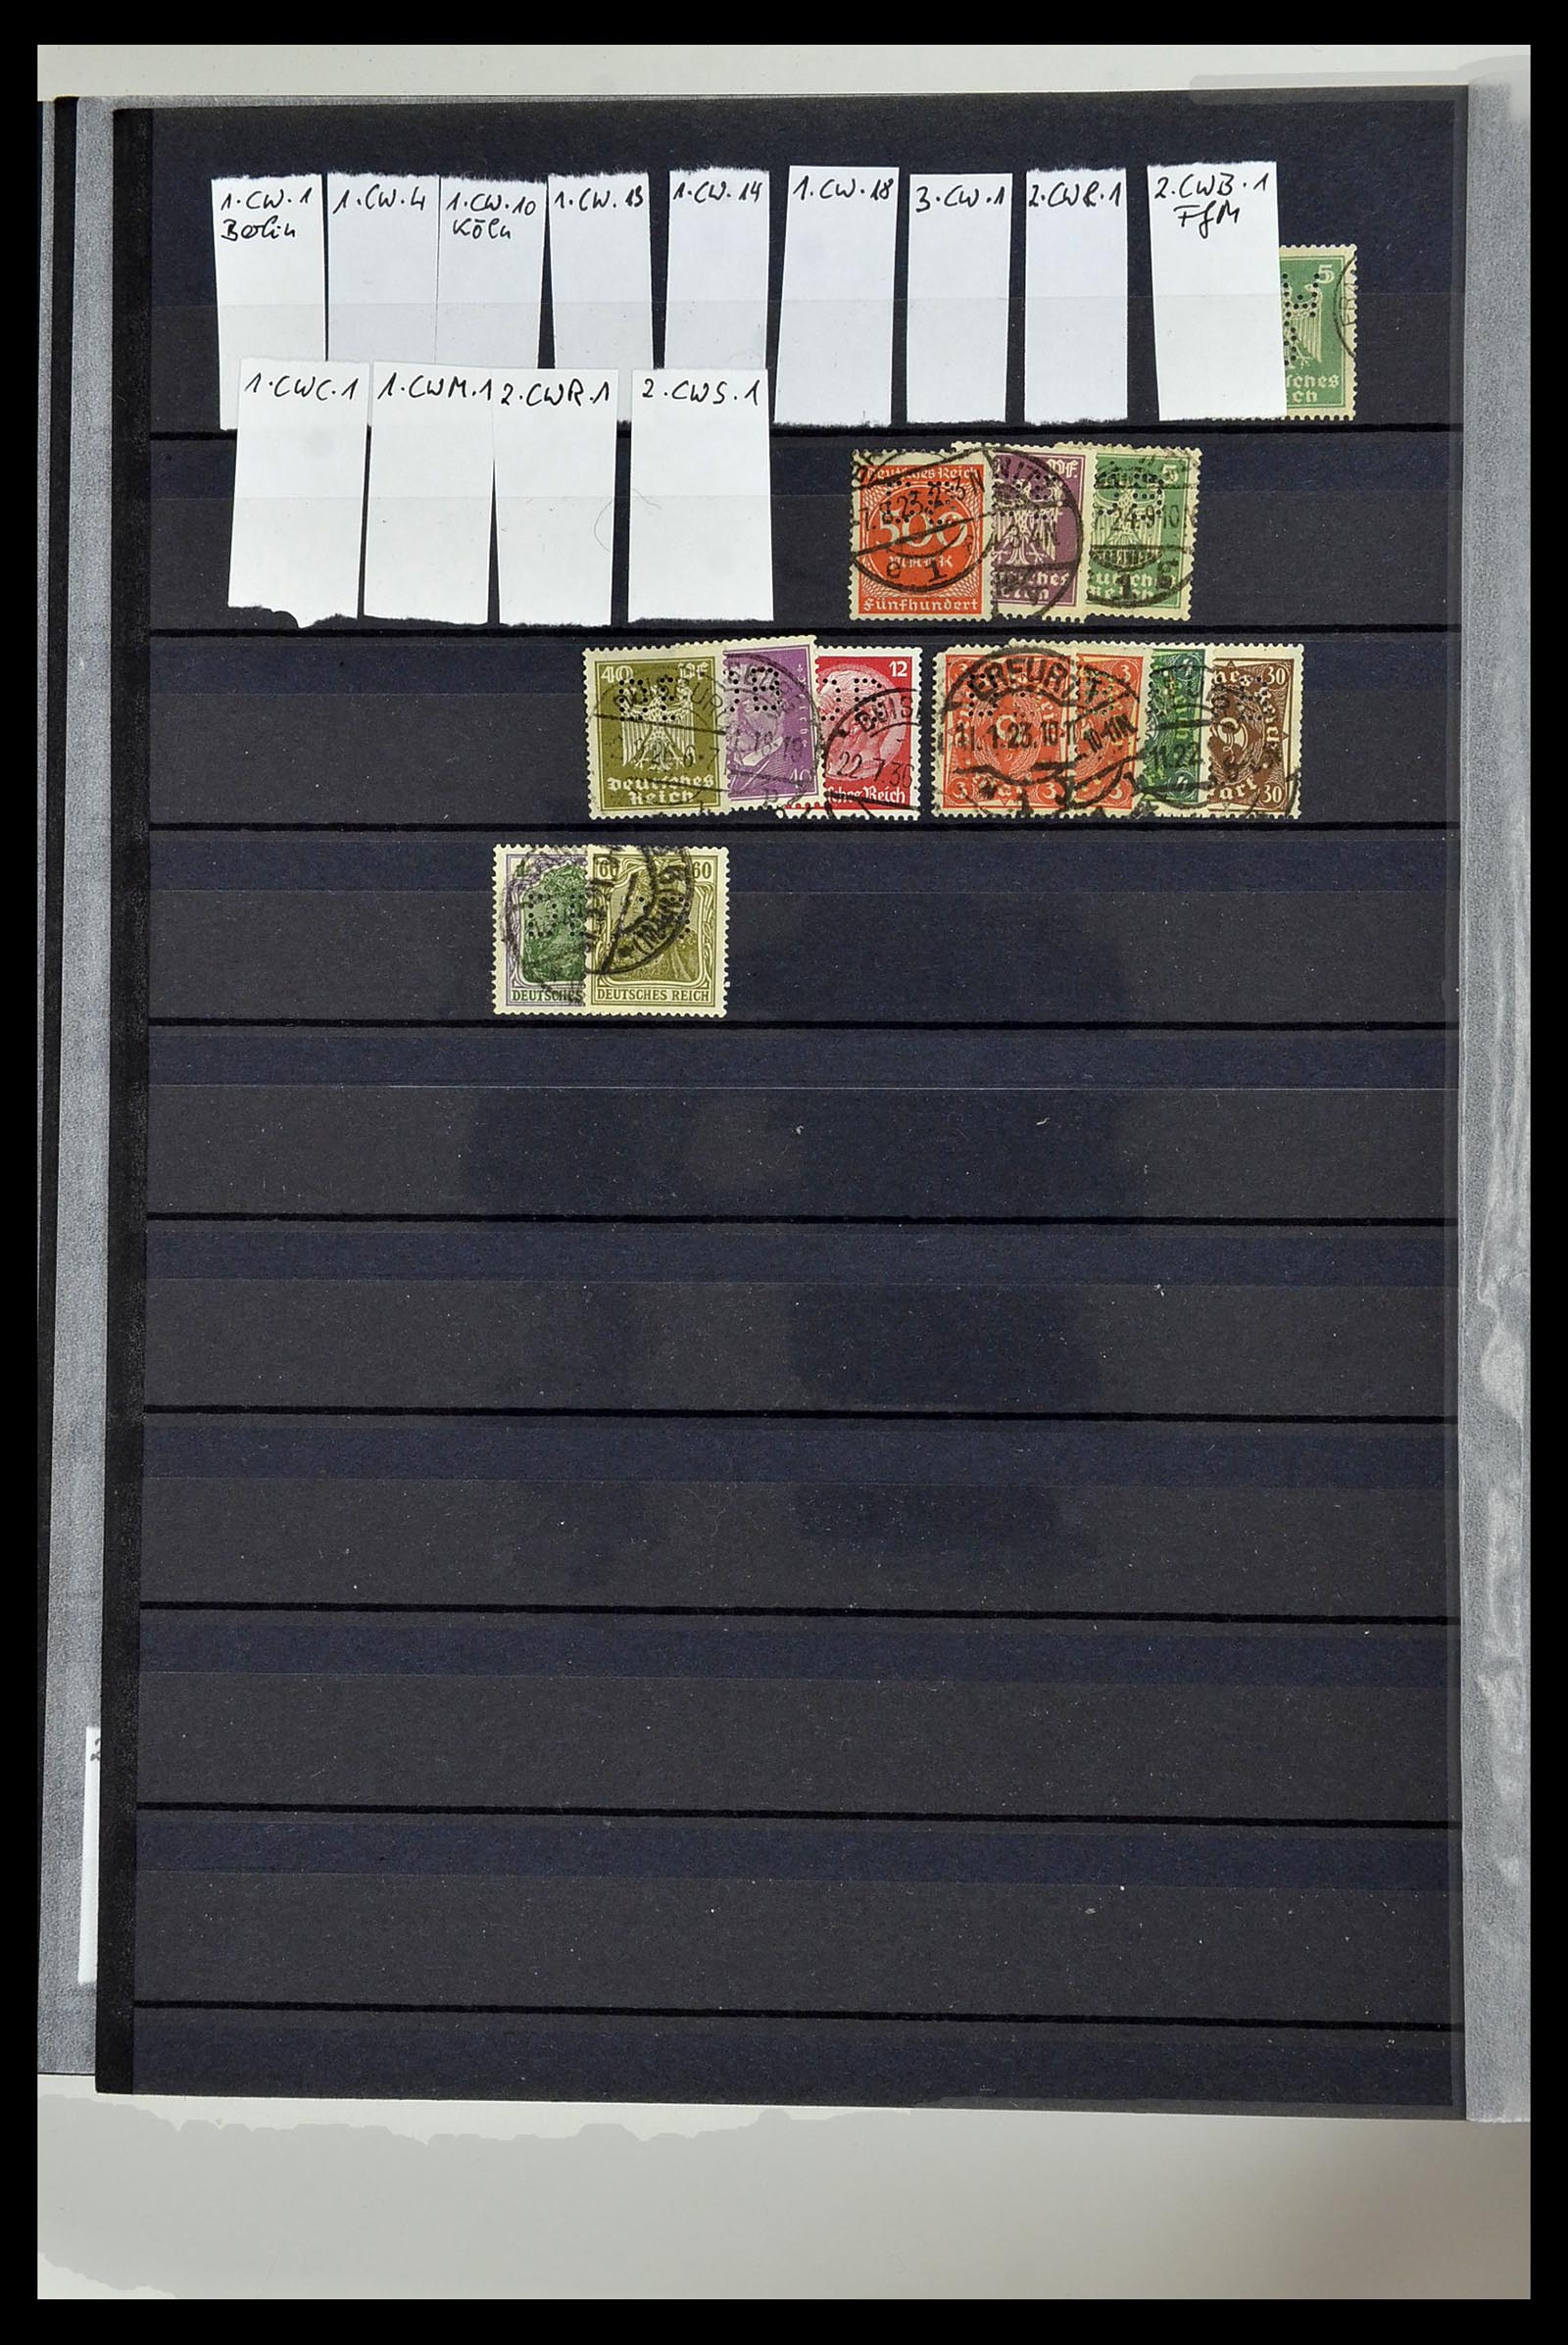 34432 090 - Stamp Collection 34432 German Reich perfins 1900-1933.